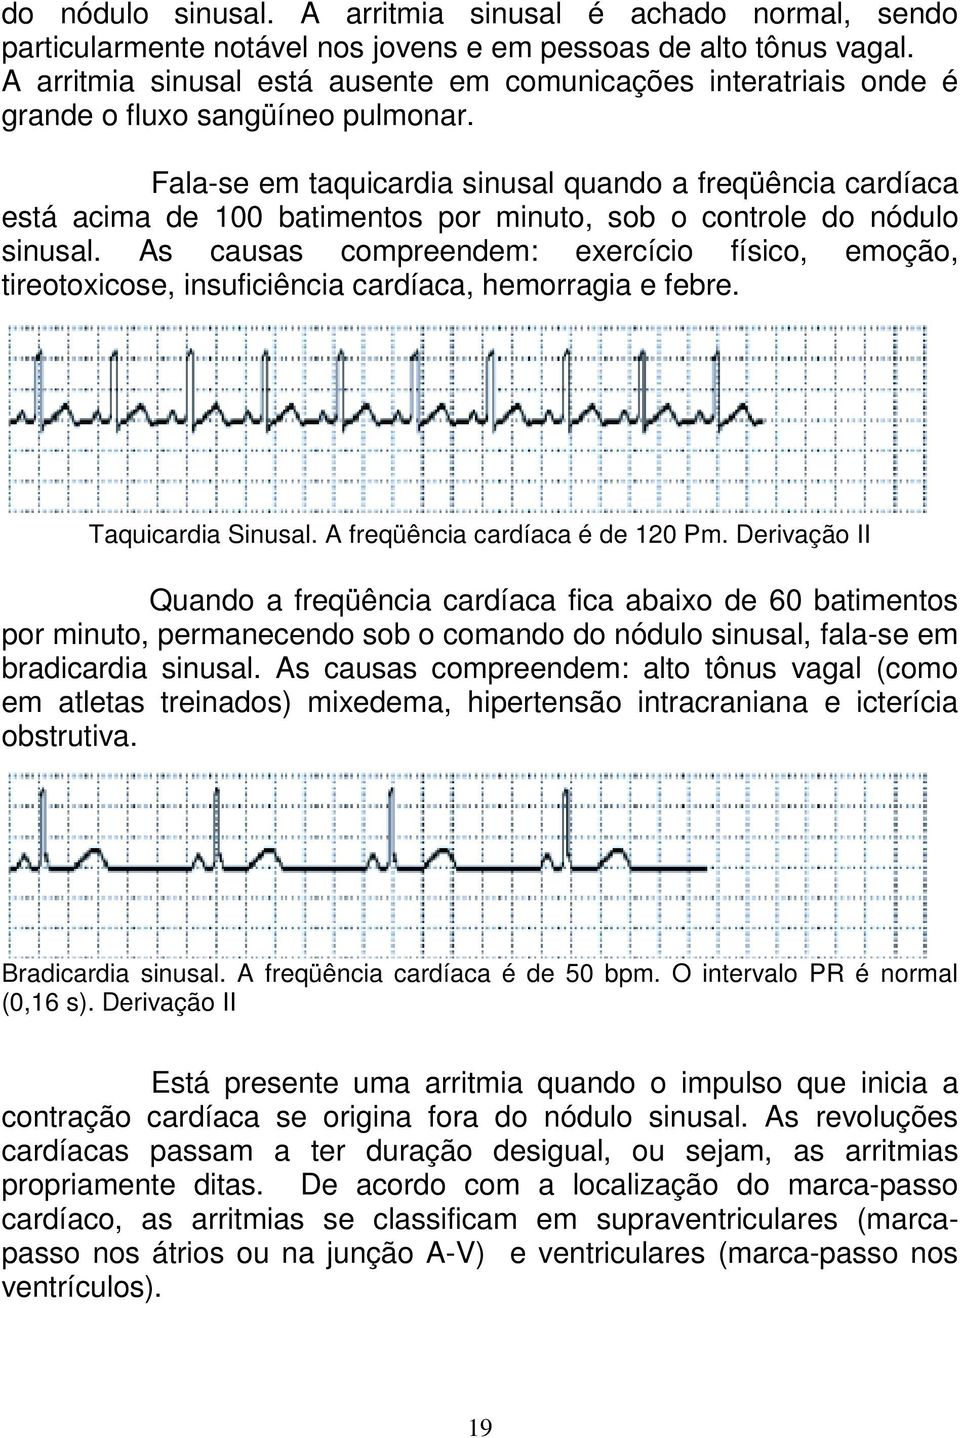 Fala-se em taquicardia sinusal quando a freqüência cardíaca está acima de 100 batimentos por minuto, sob o controle do nódulo sinusal.